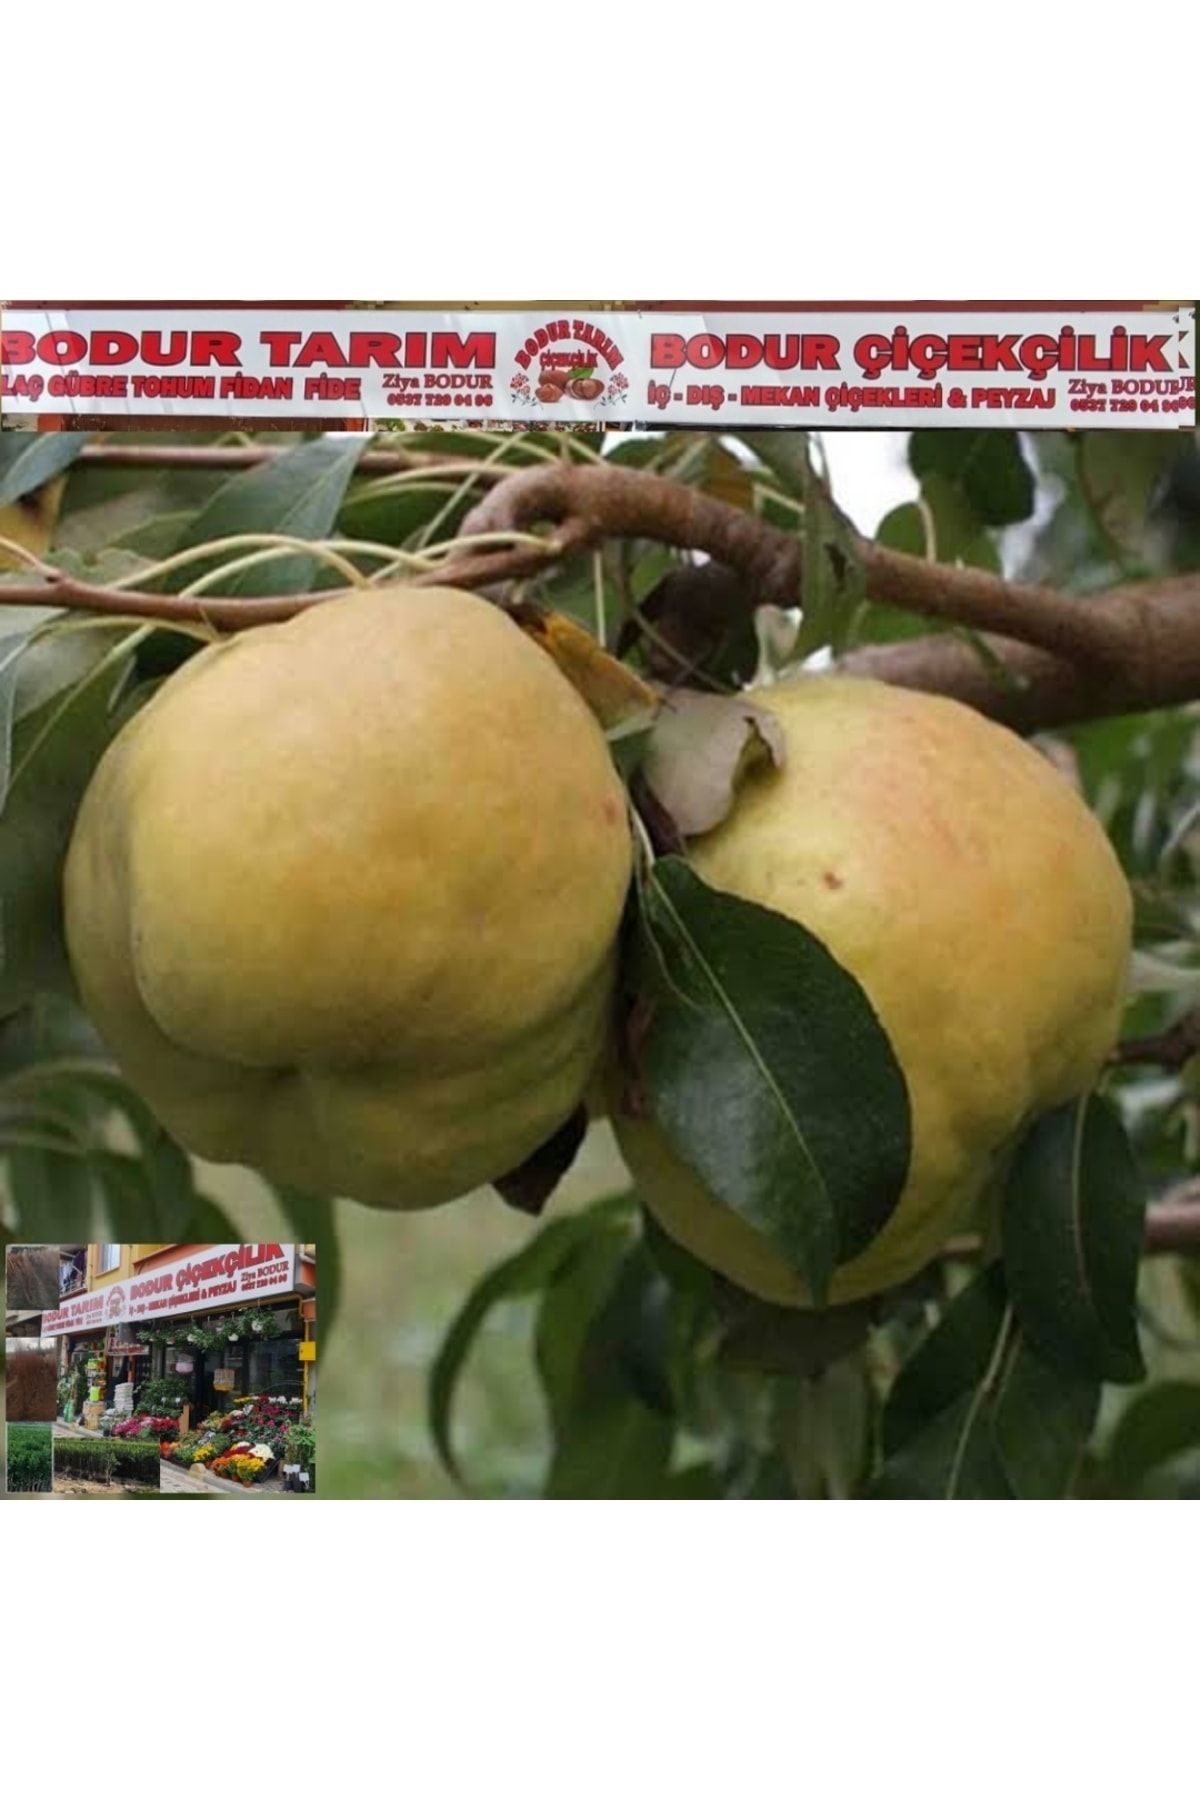 BODUR TARIM Bulancak 2 Yaşında Yarı Bodur Aşılı Tüplü Deveci Armut Meyve Fidanı